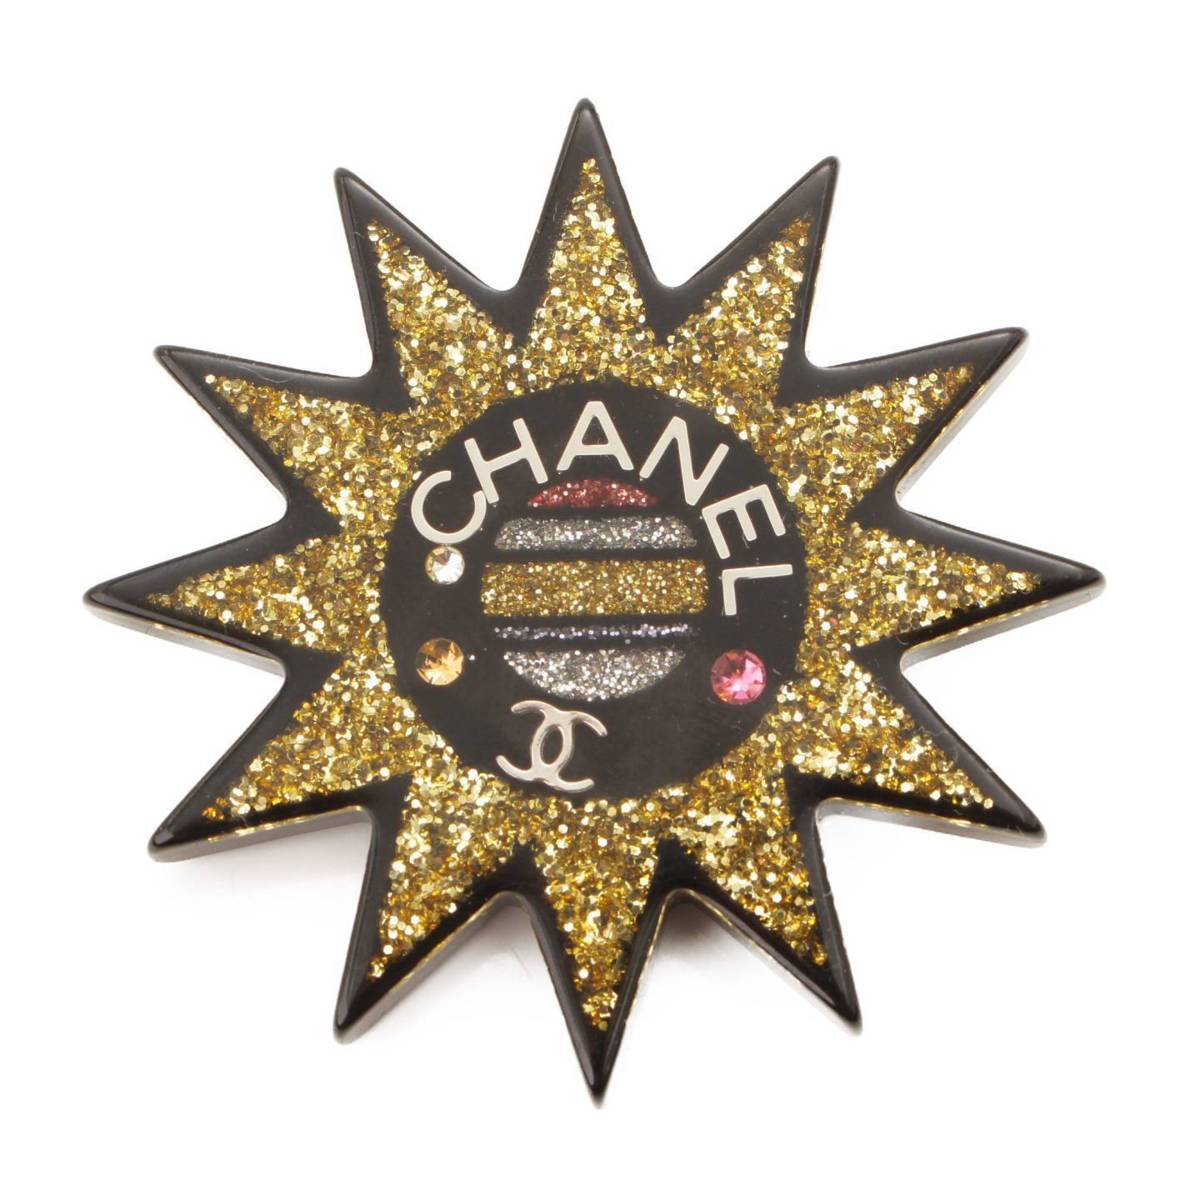 シャネル(Chanel) 17K サン 太陽 モチーフ ラメ ブローチ ゴールド